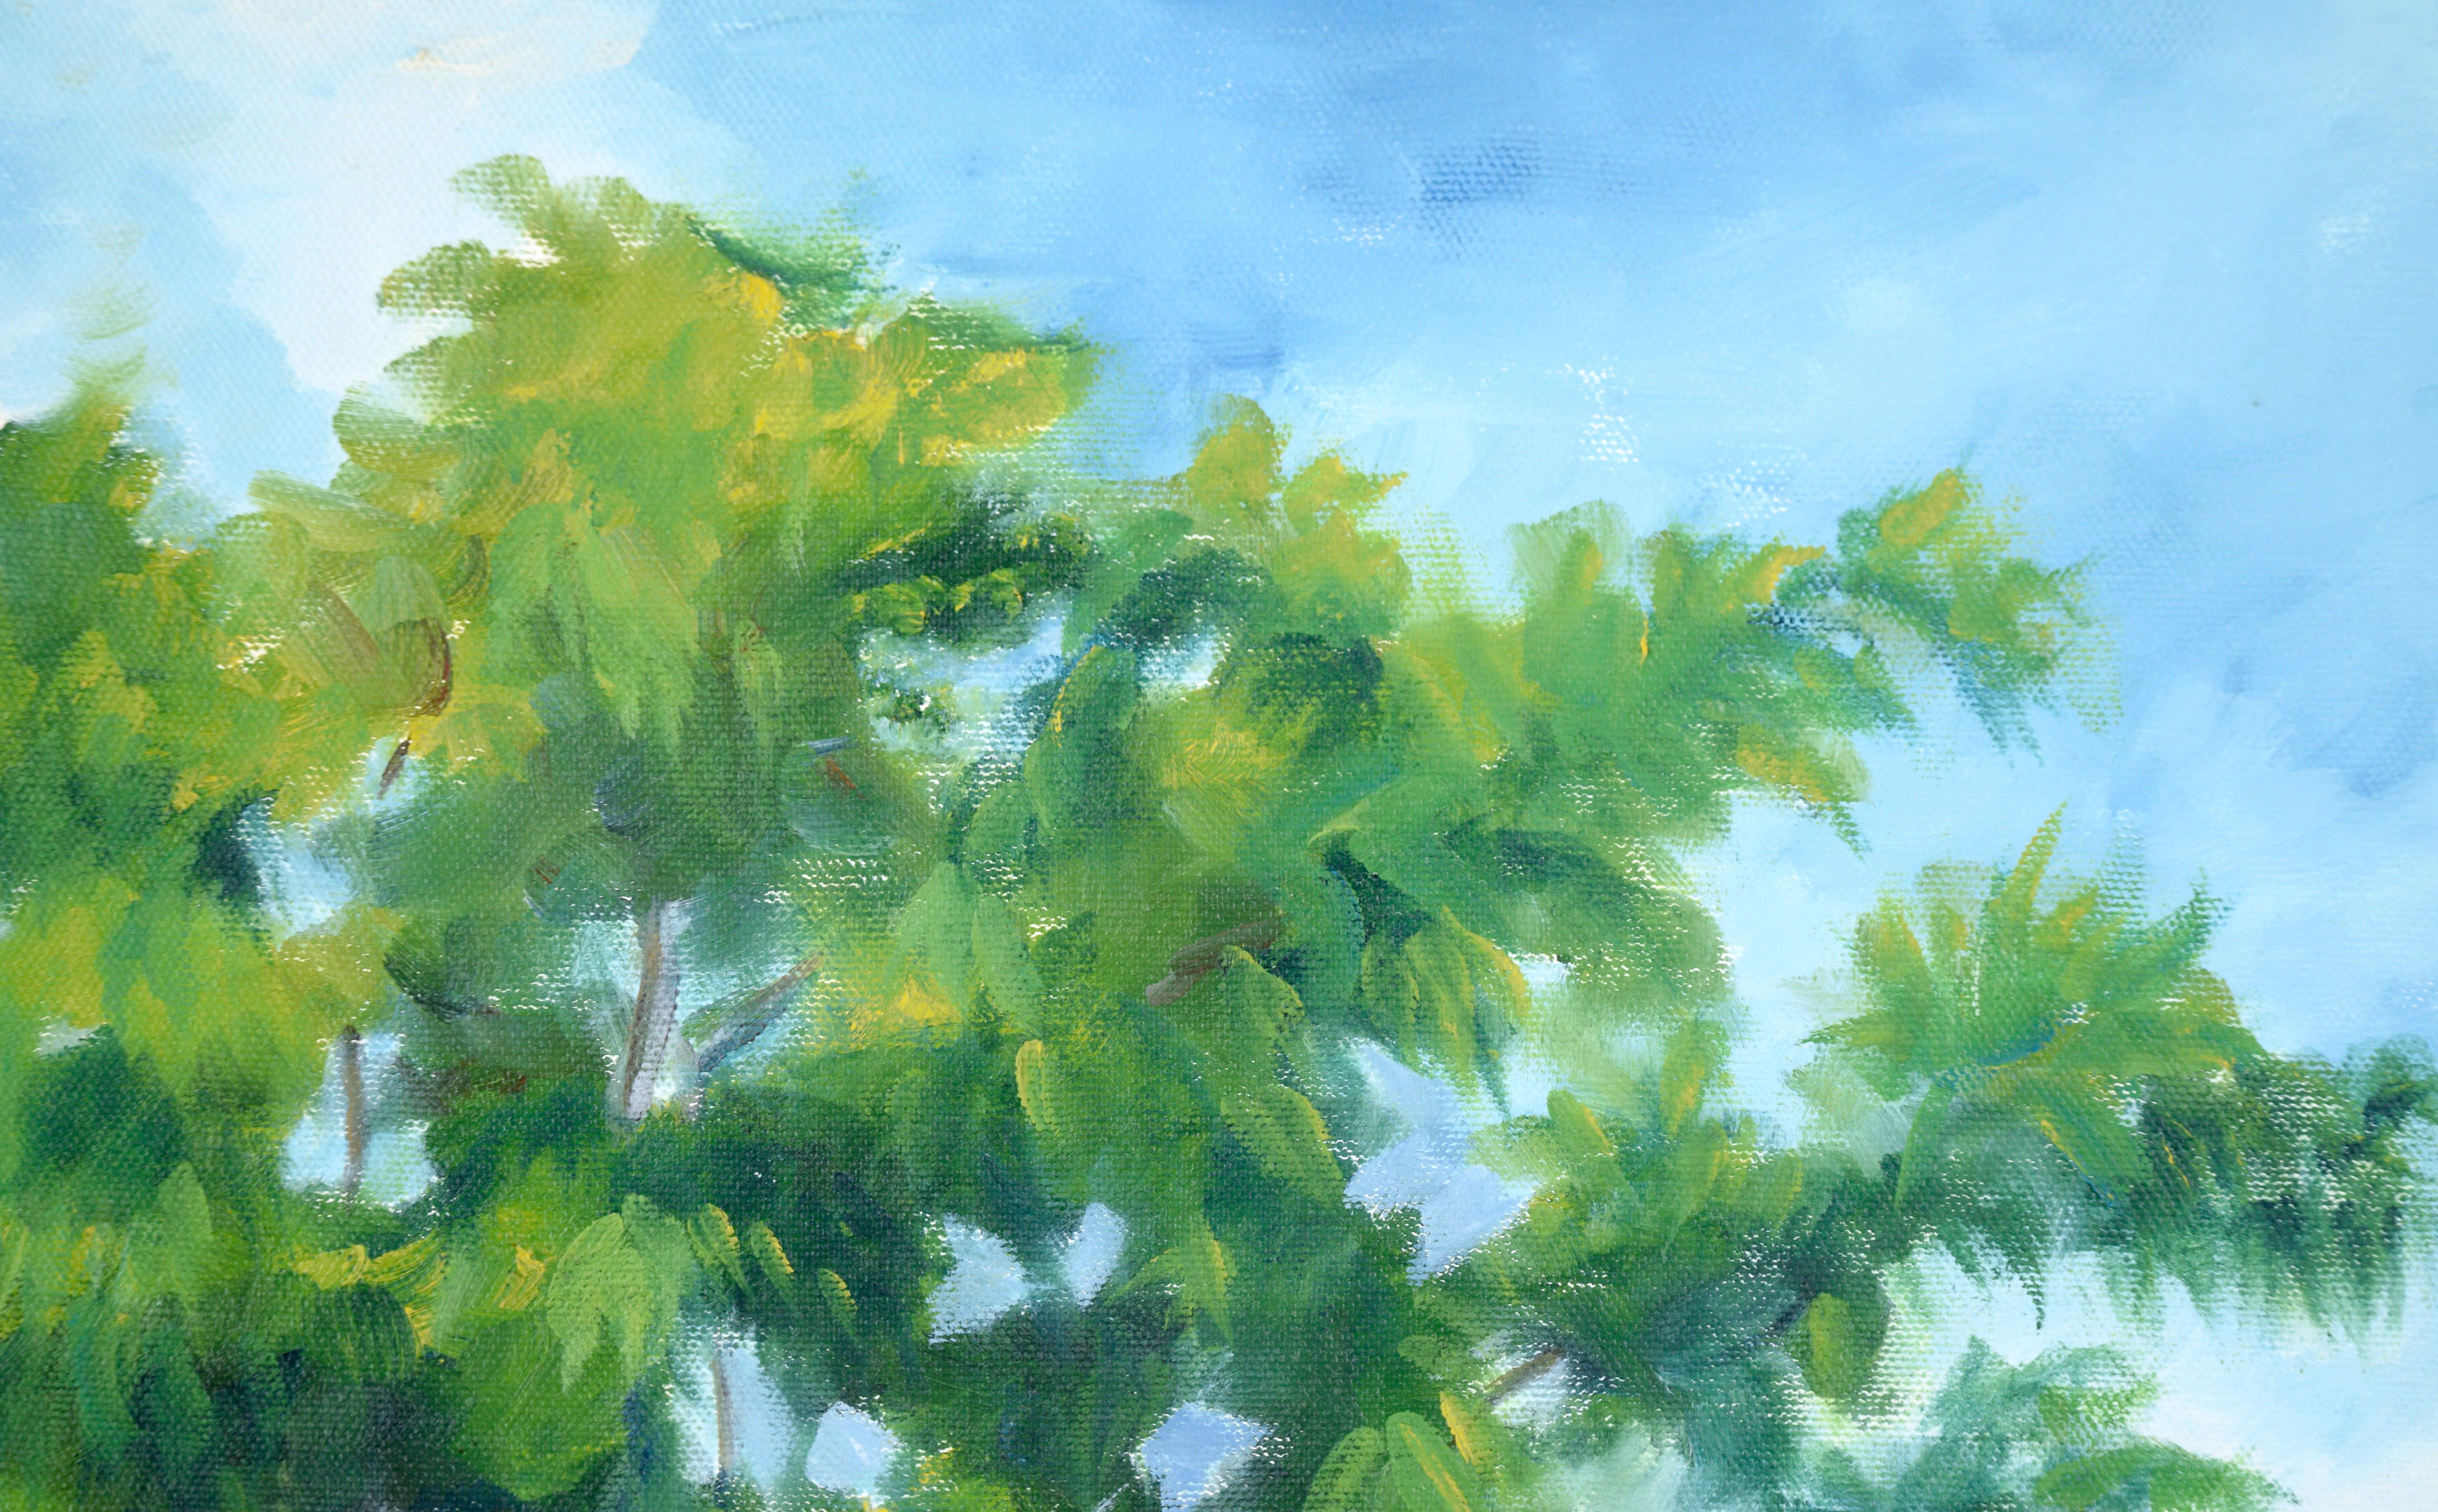 Walking the Path Under the Trees – Landschaft in Acryl auf Leinwand (Impressionismus), Painting, von Unknown